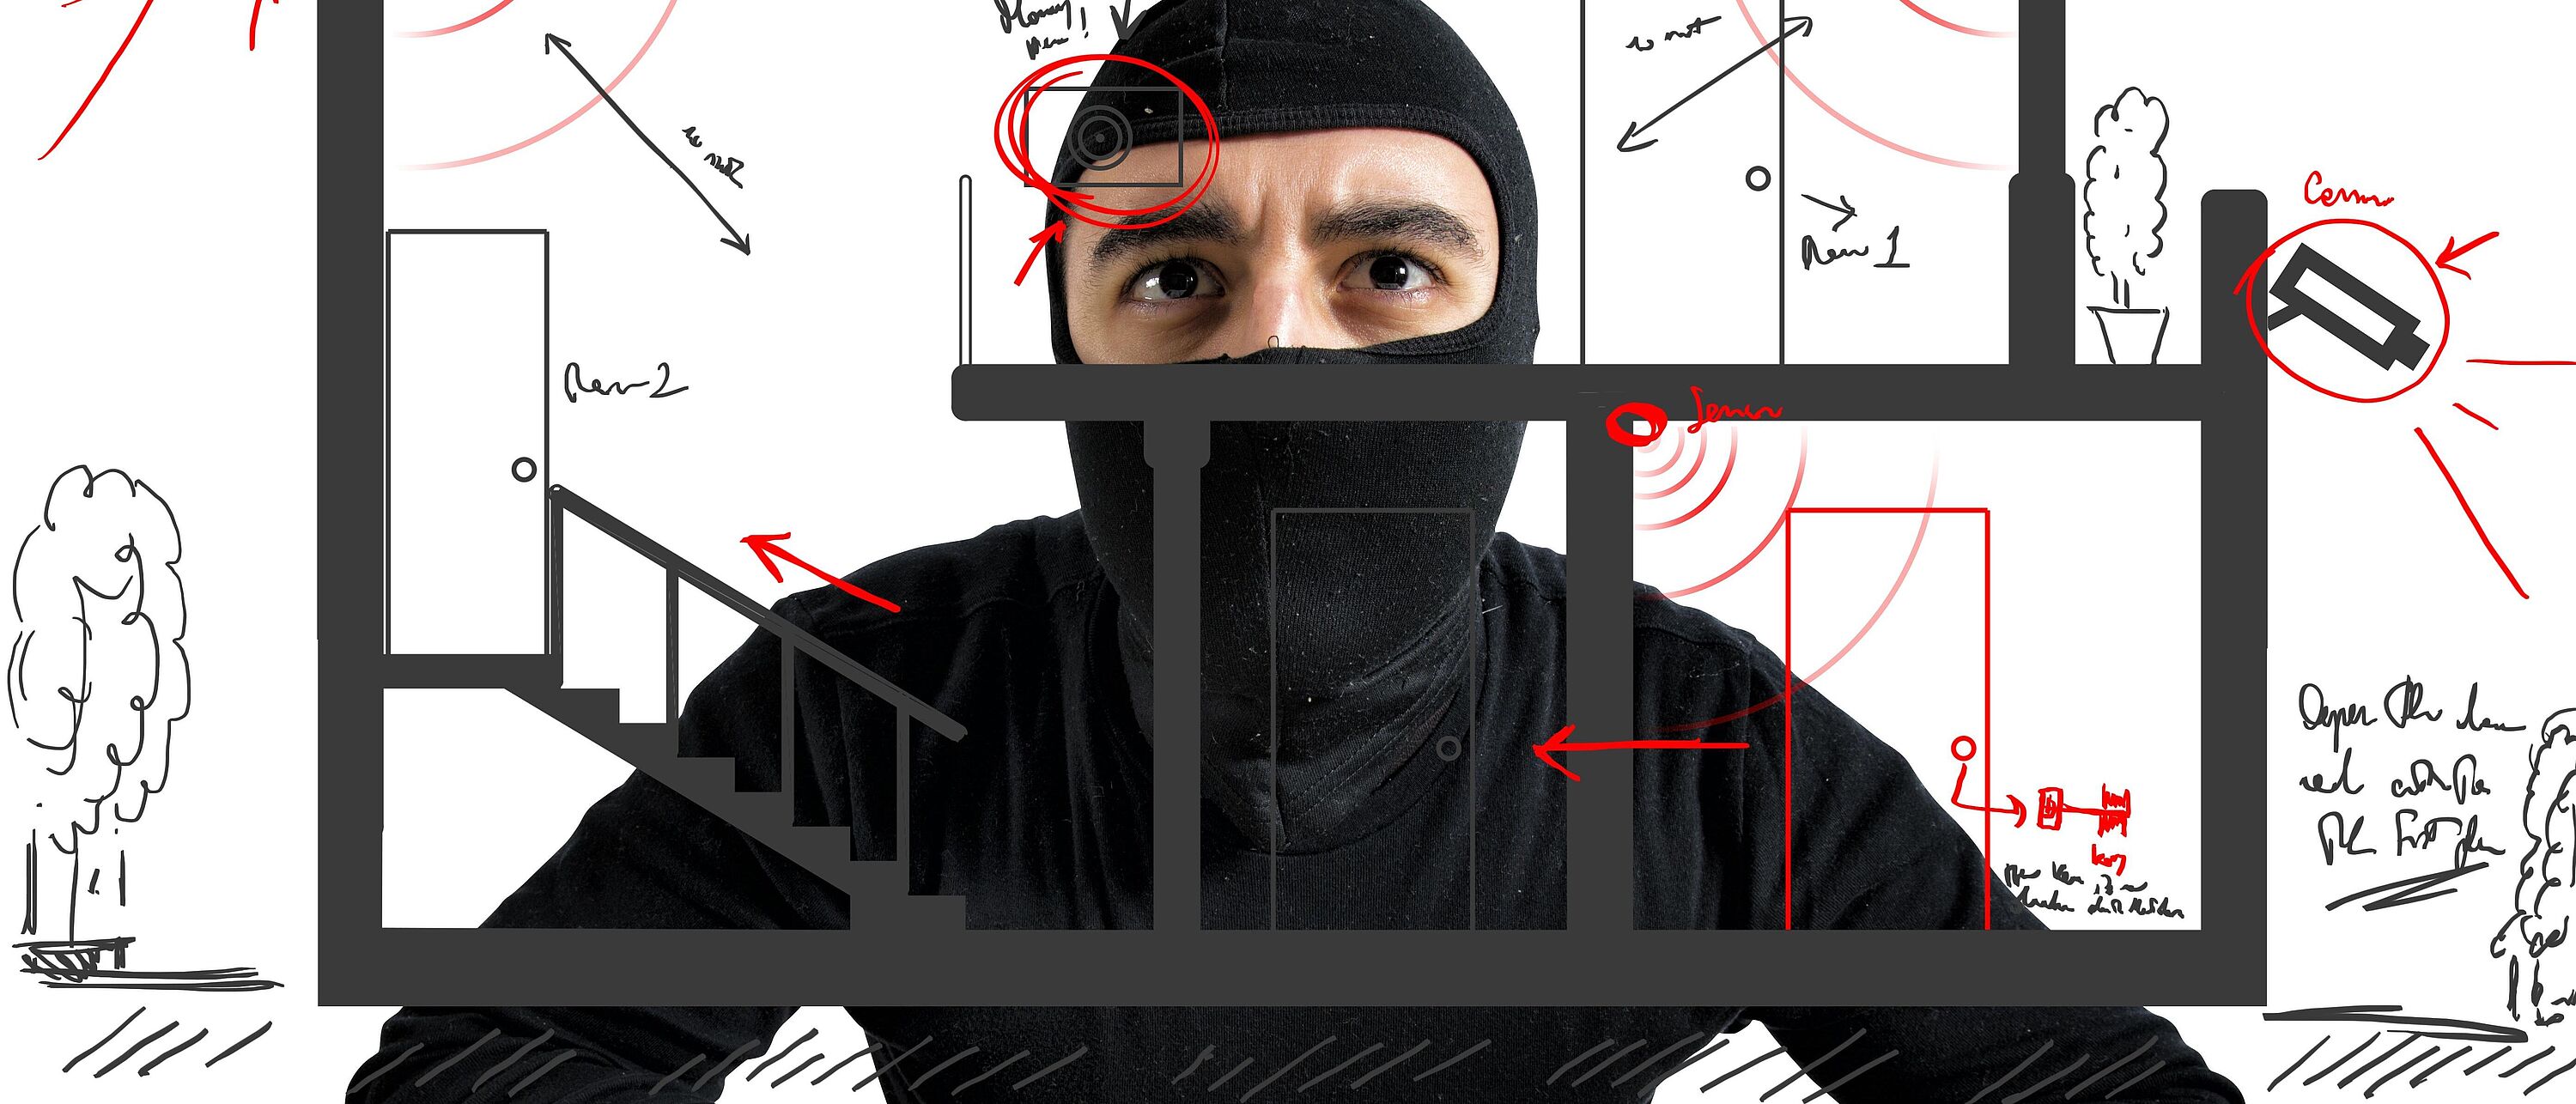 Zeichnung eines schwarzgekleideten Einbrechers, der auf ein Haus schaut, welches mit diversen Schutzmechanismen ausgestattet ist (Kameraüberwachung, Alarmanlagen etc.)